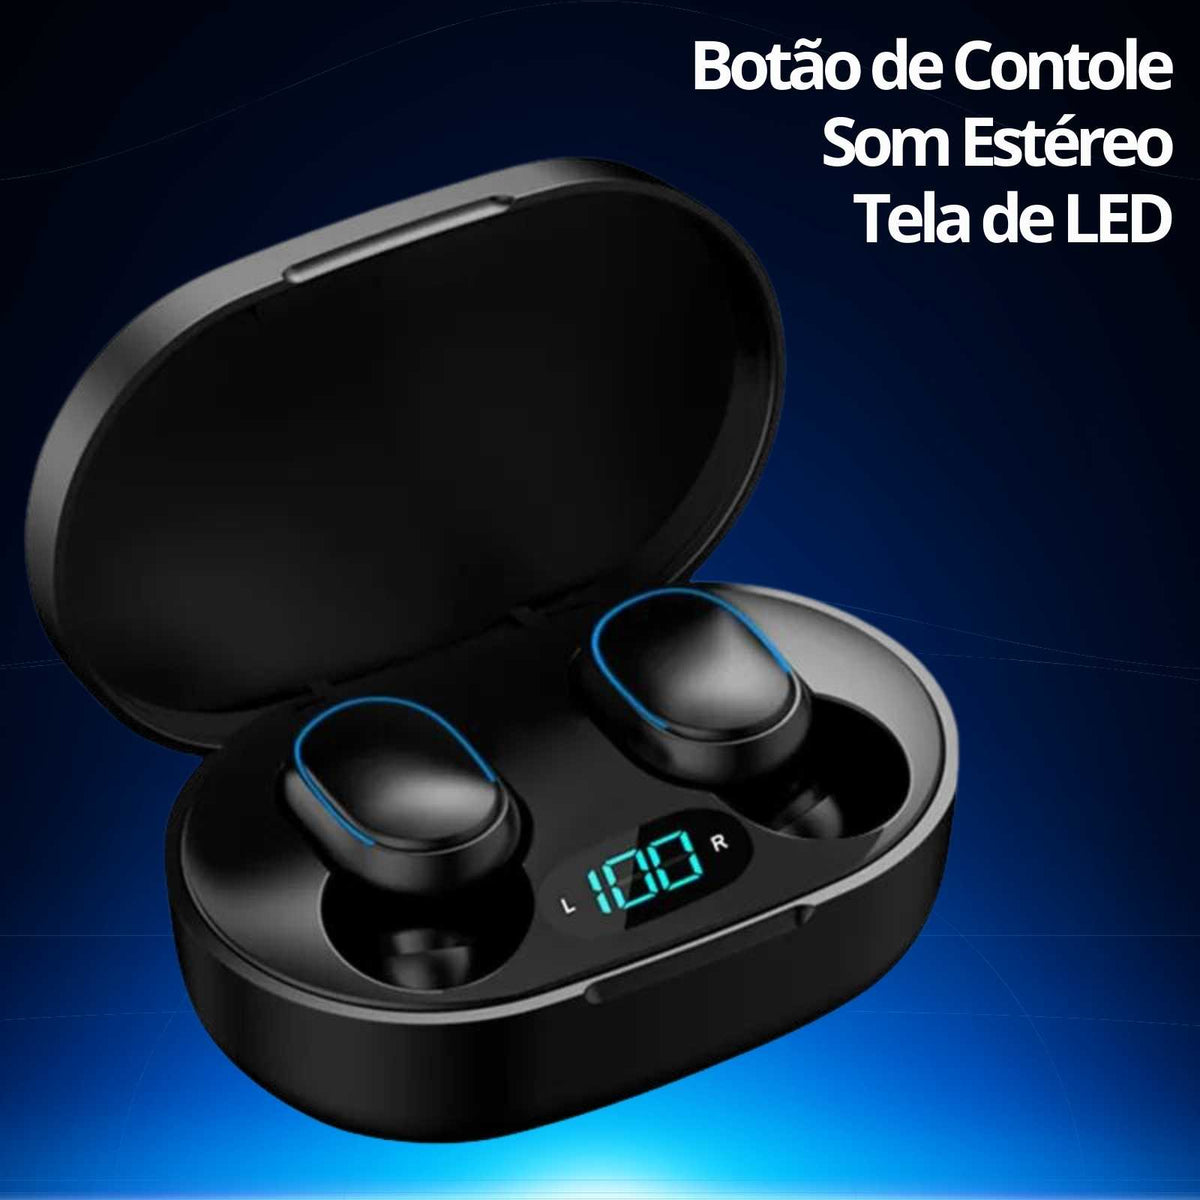 Fone de Ouvido Bluetooth com Microfone, Display LED Earbuds - TWS